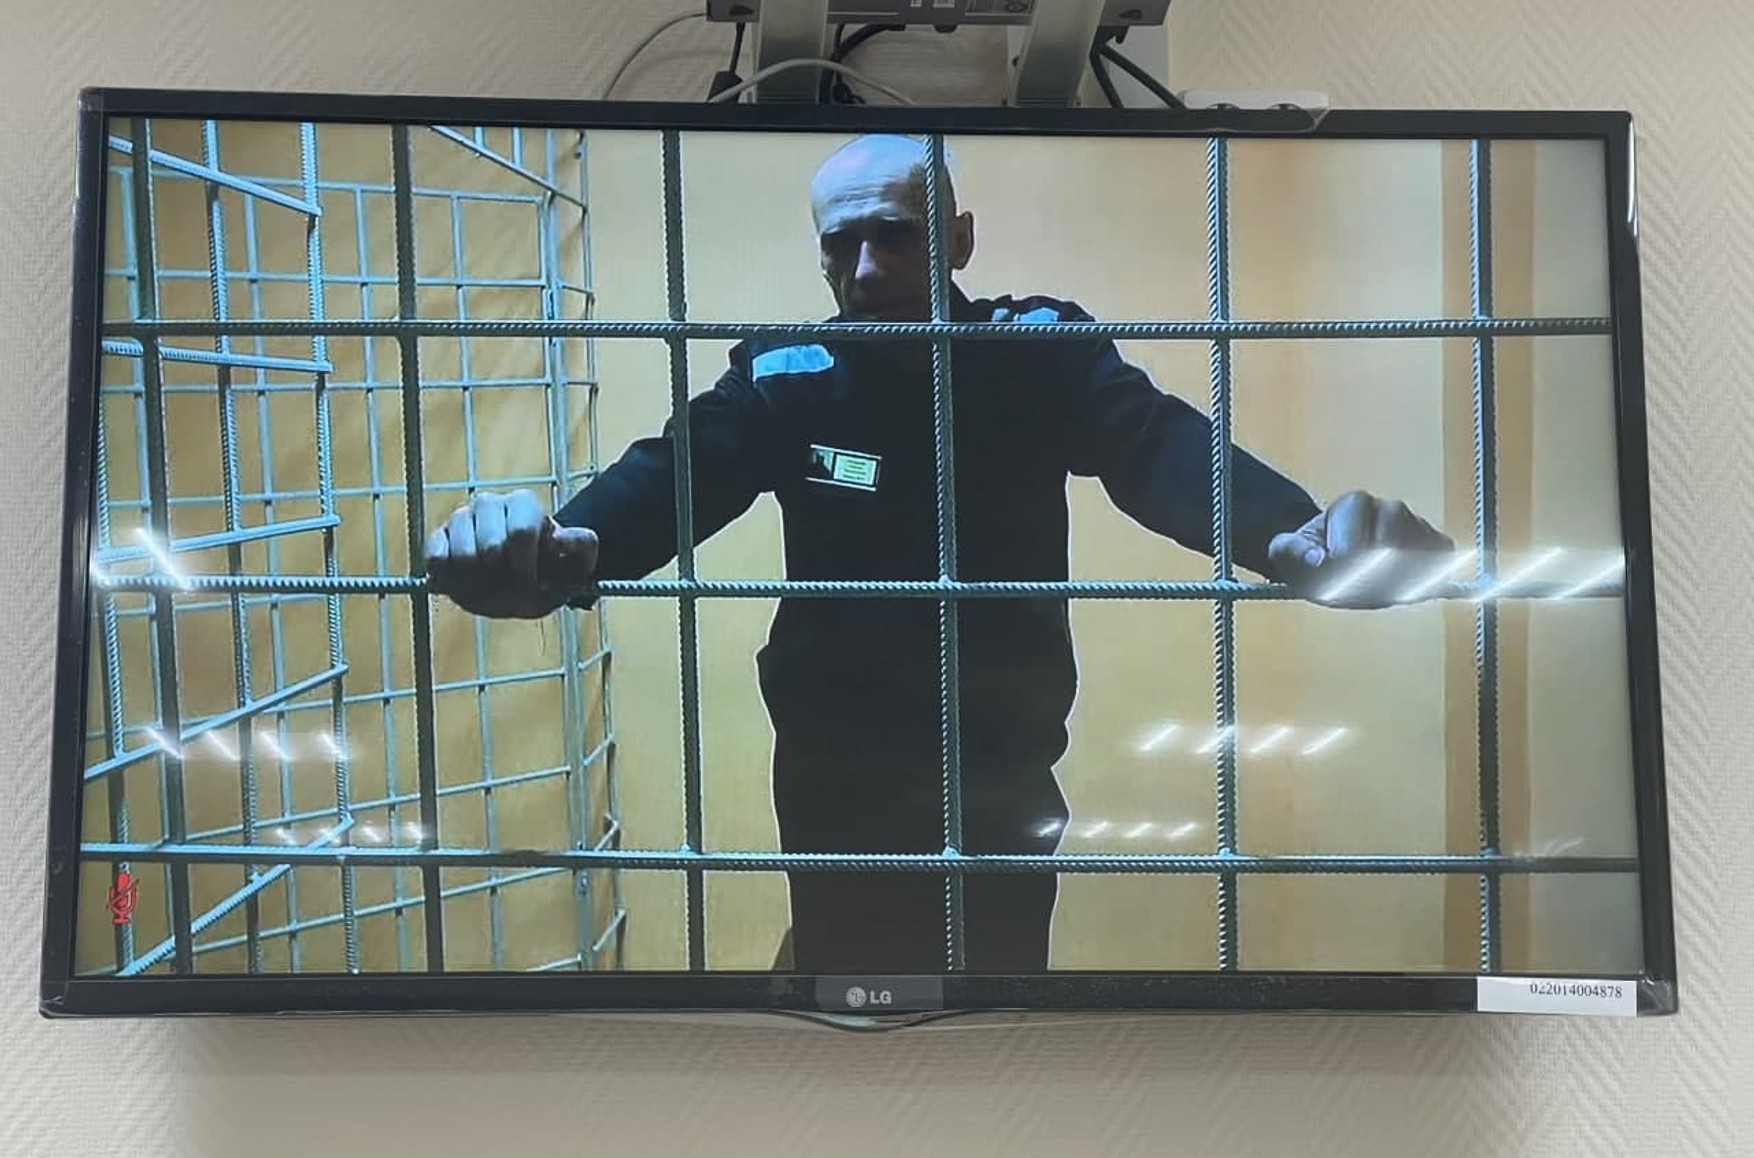 Навального перевели з тюремної лікарні в ІК-2 в Покрові